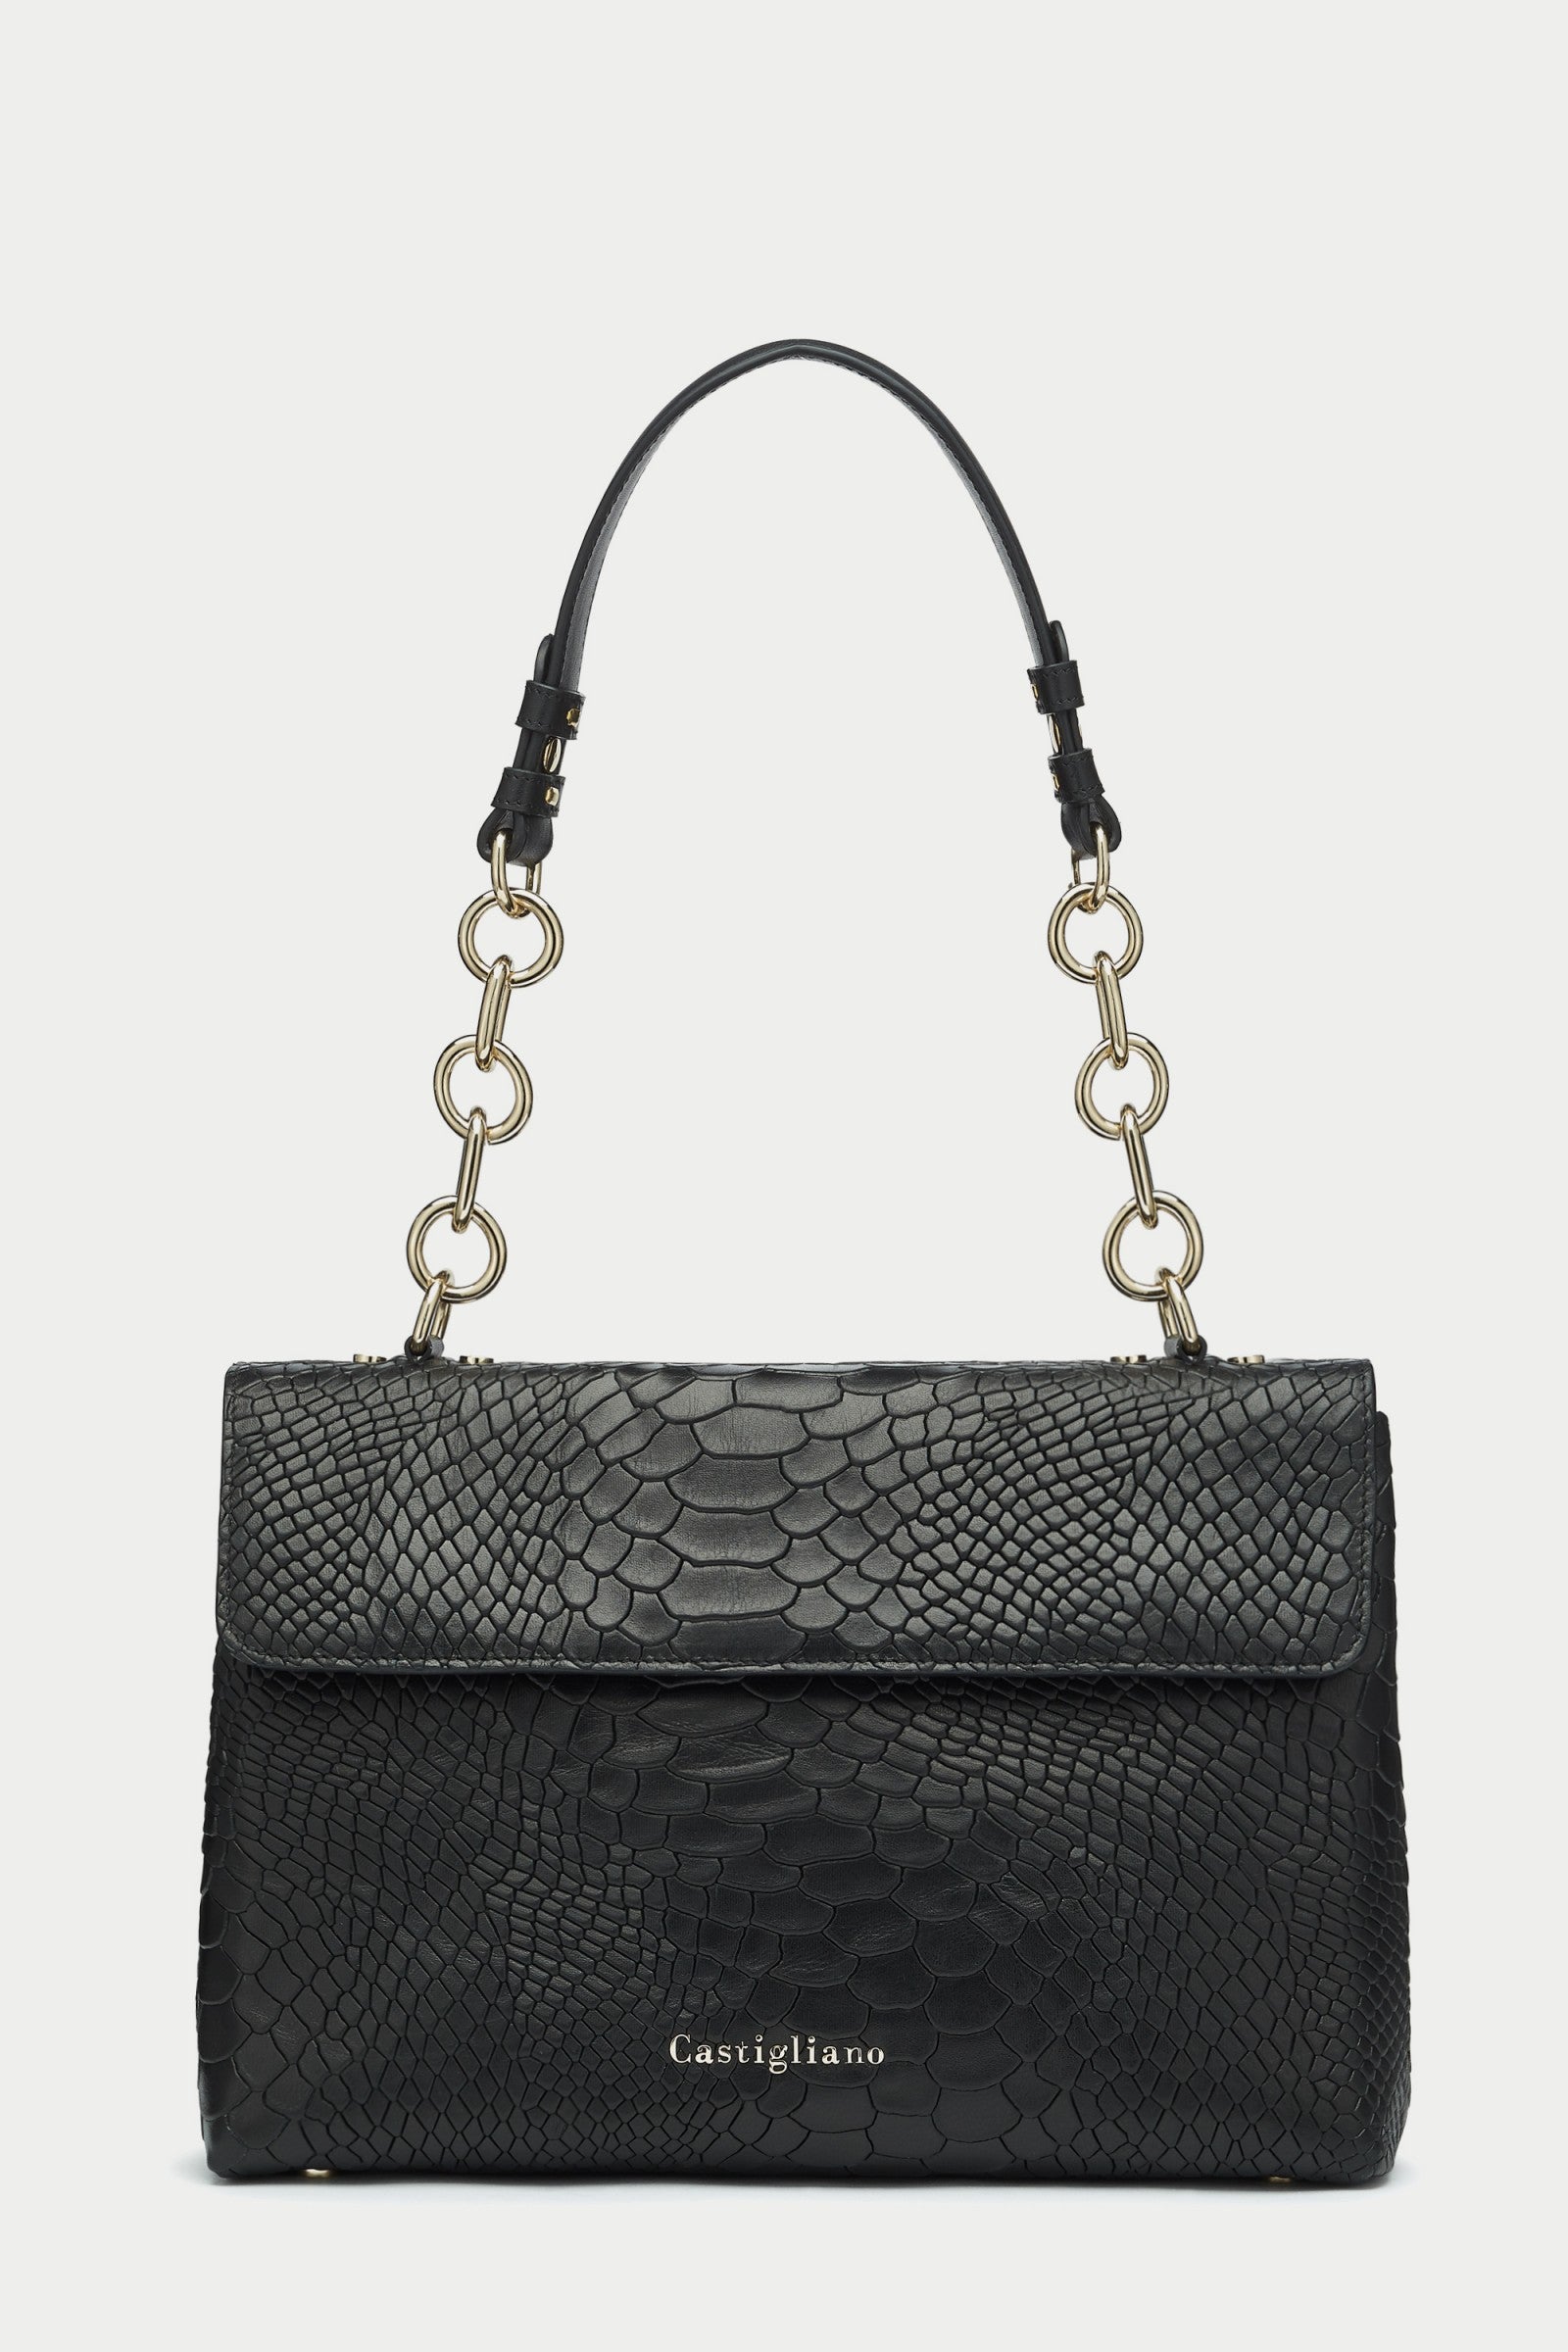 Briella ANACONDA BLACK Leather Handbag